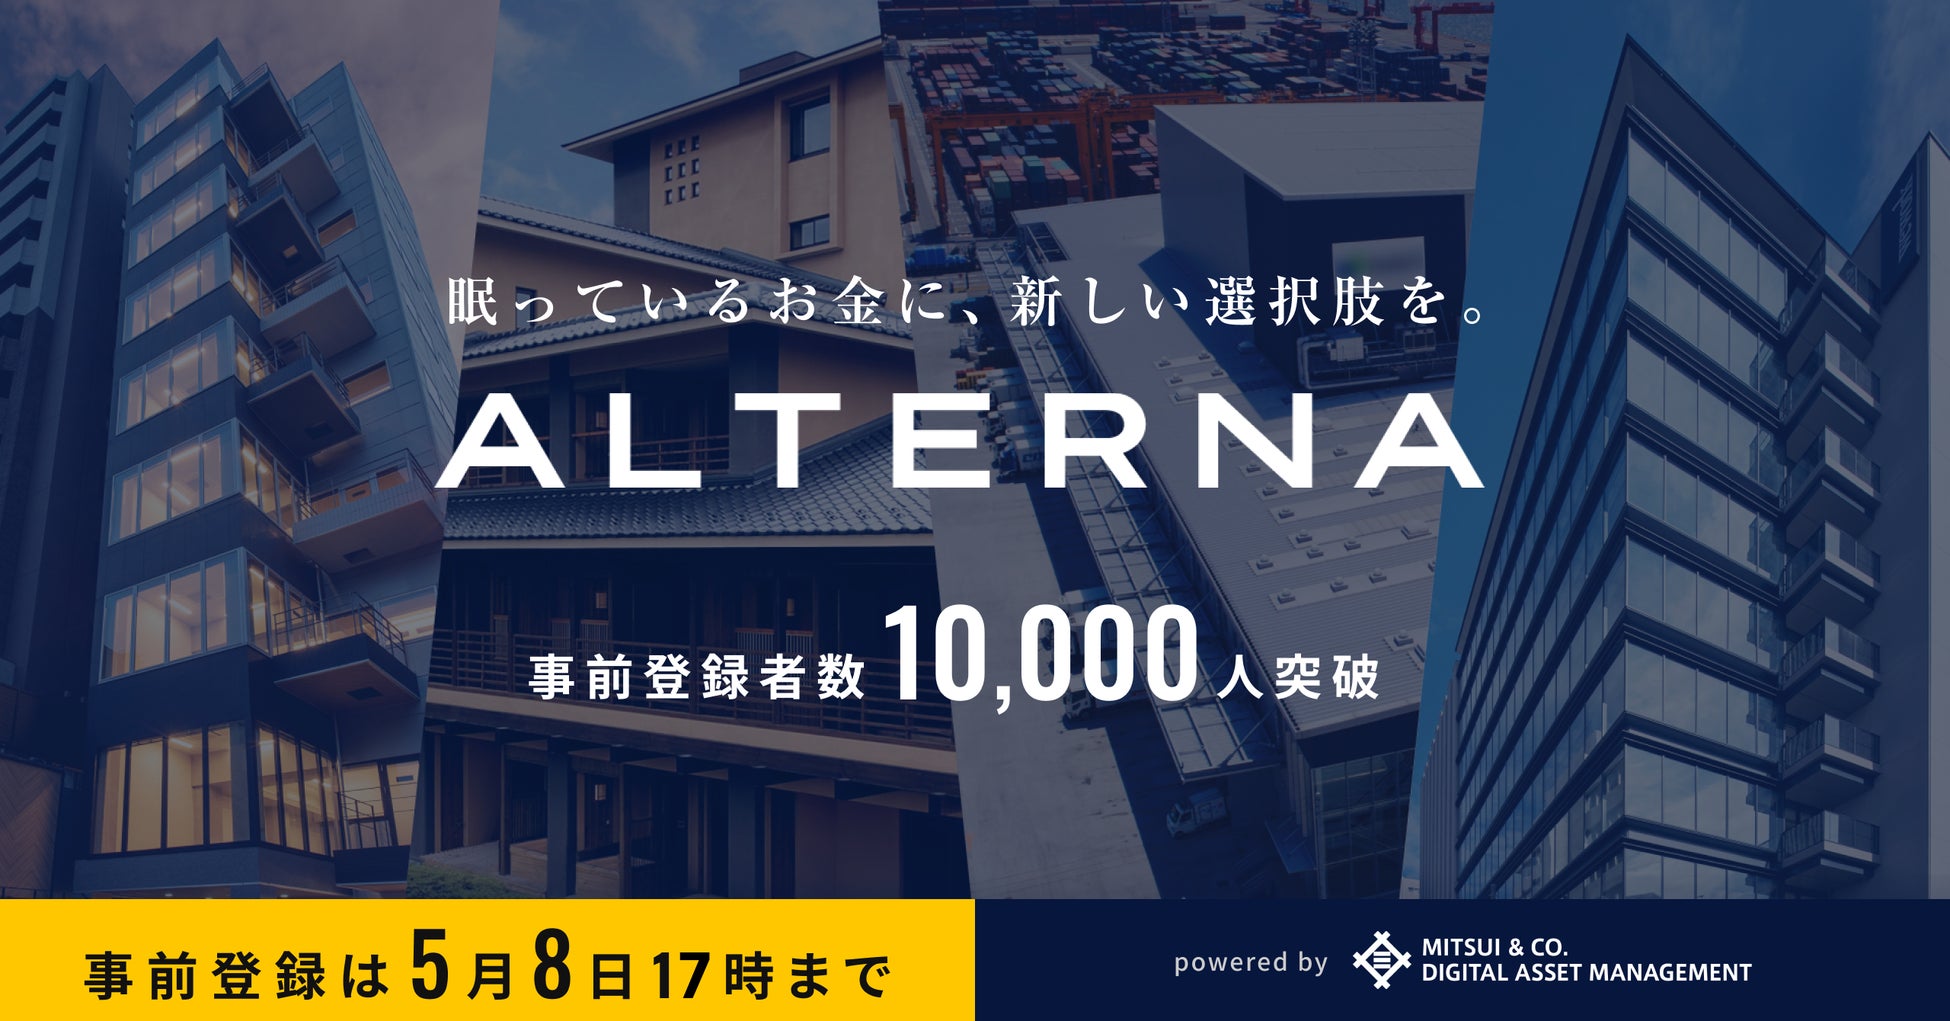 デジタル証券で安定資産投資「ALTERNA（オルタナ）」、事前登録者数10,000人突破。登録は5月8日17時までのサブ画像1